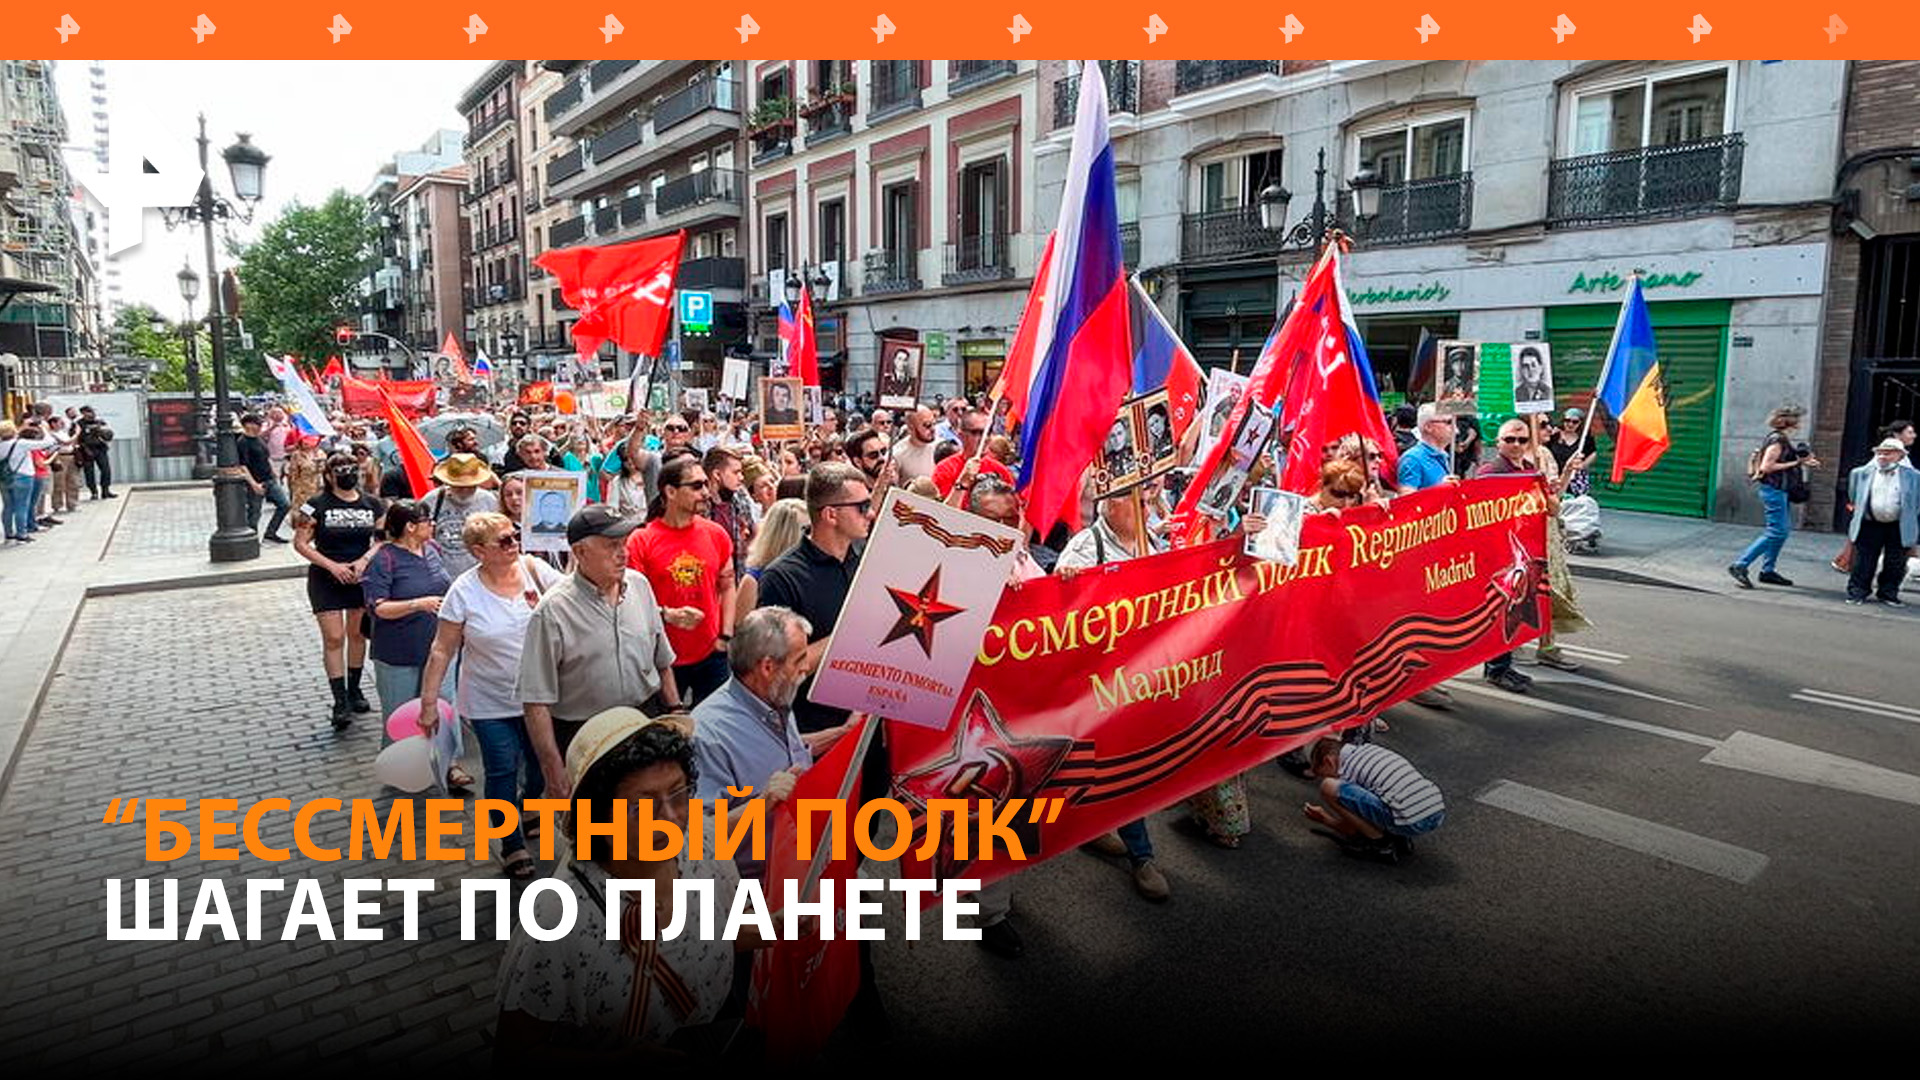 Сотни людей приняли участие в акции "Бессмертный полк" по всему миру / РЕН Новости